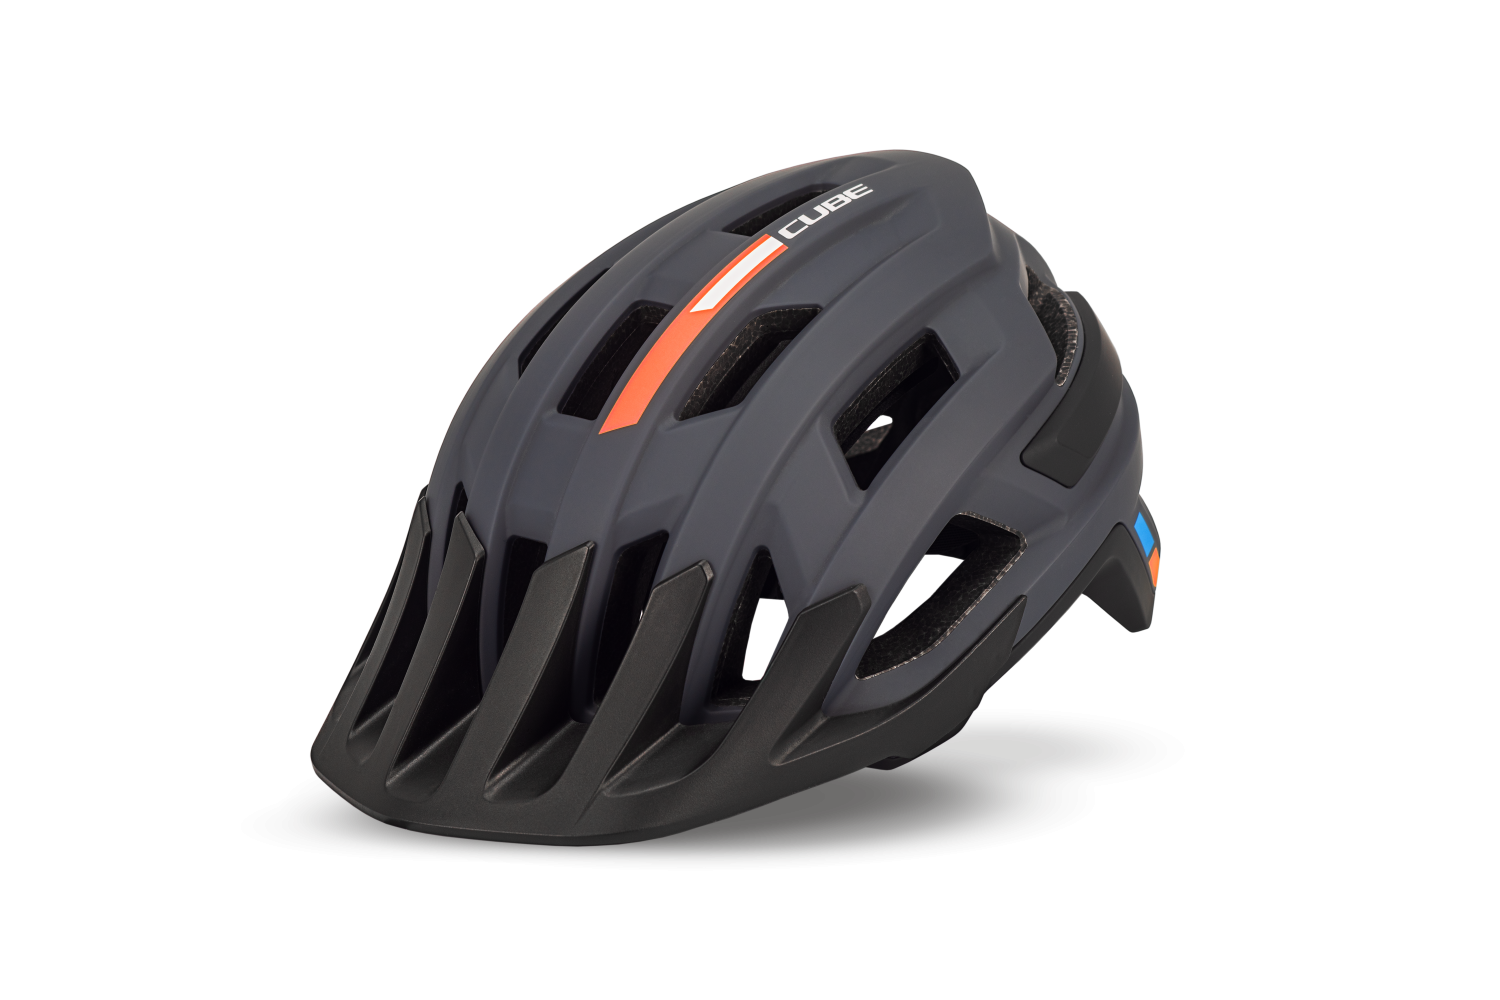 reactie Gom Drijvende kracht CUBE CUBE Helmet ROOK X Actionteam | Велошлемы | Велосипеды CUBE в России -  официальный сайт